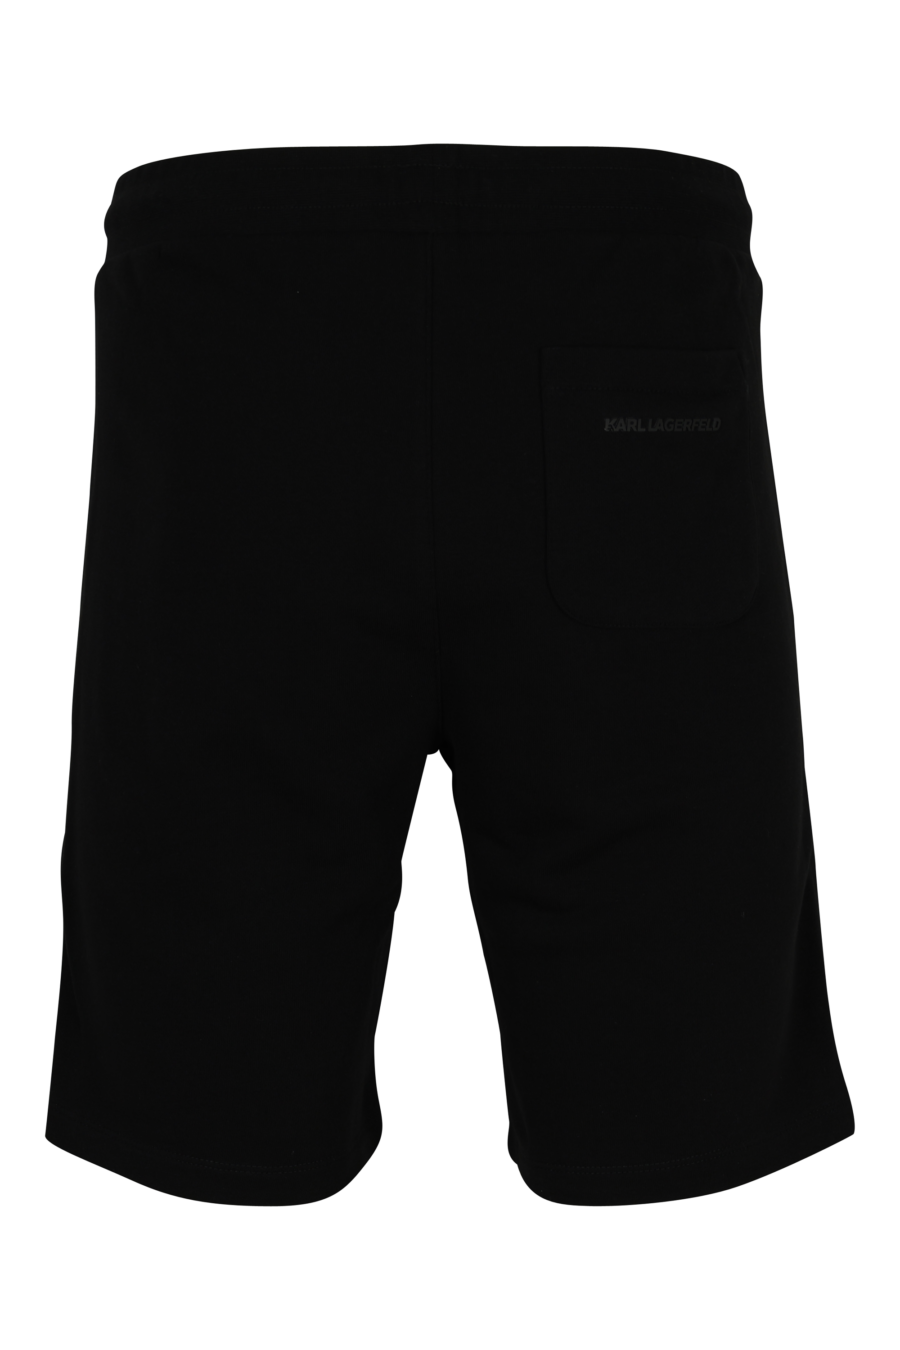 Pantalón de chándal negro midi con minilogo "rue st guillaume" - 4062226934541 1